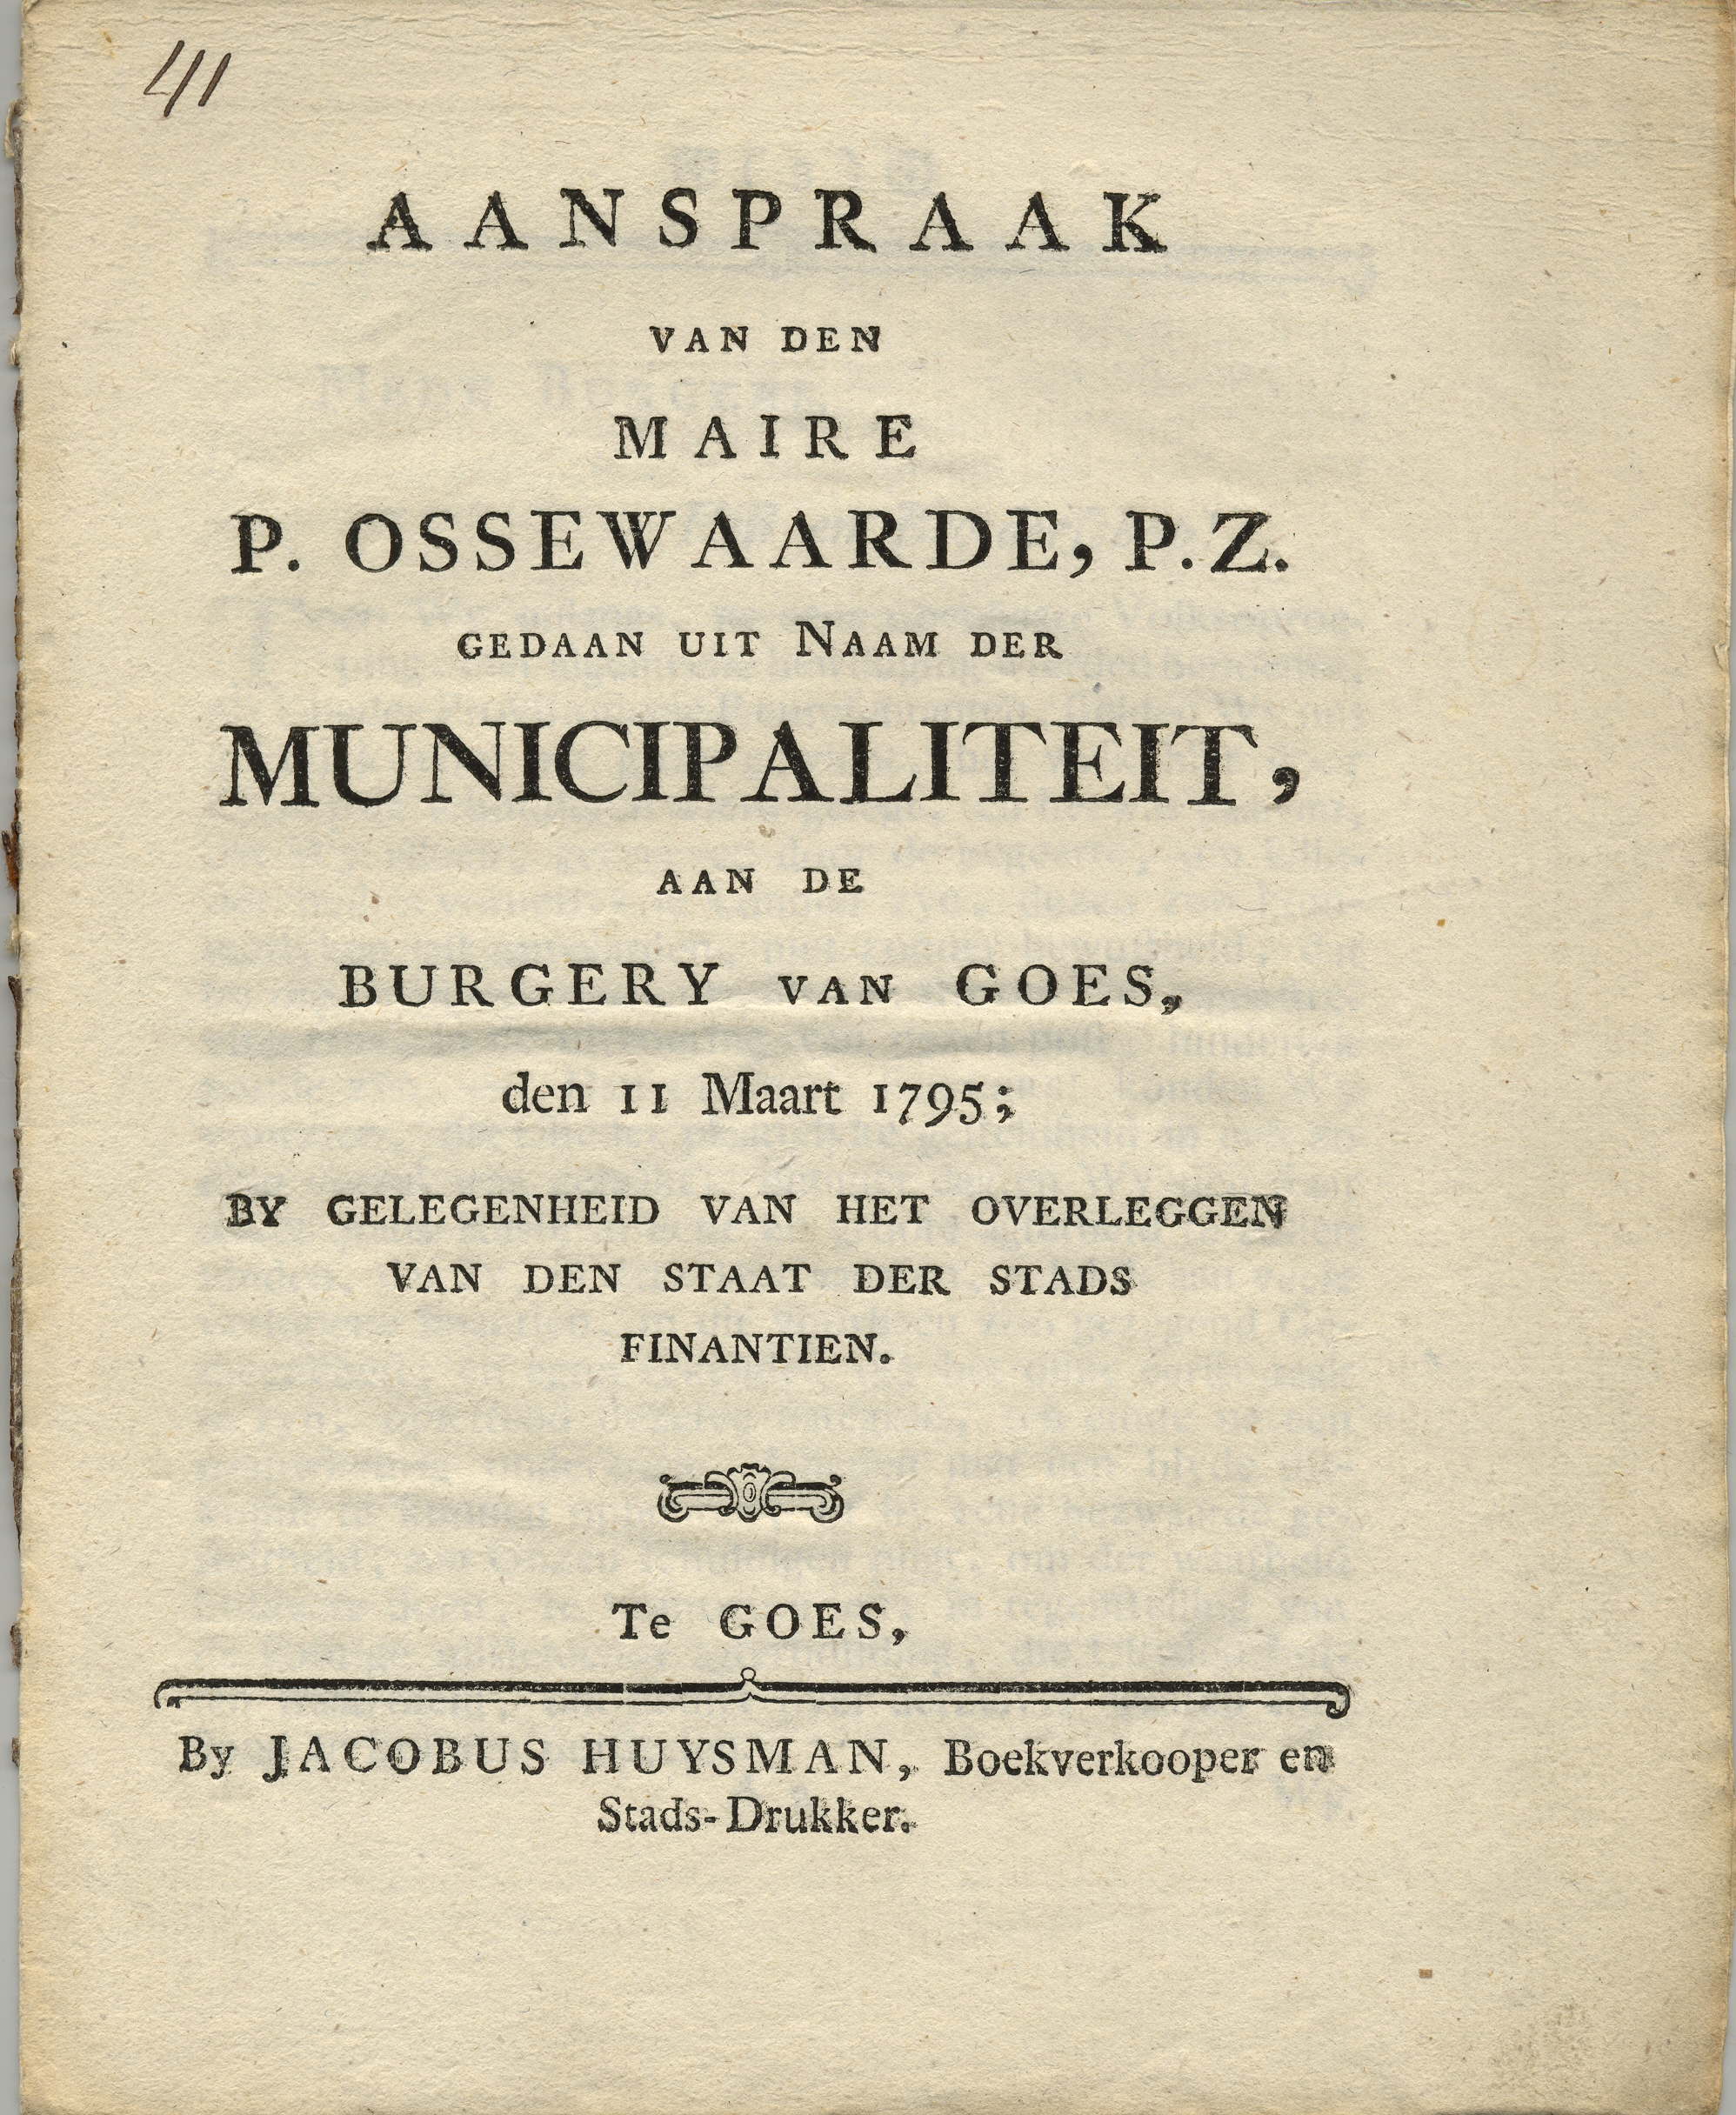 Verklaring over de stadsfinancien door maire P. Ossewaarde Pz., 1795.